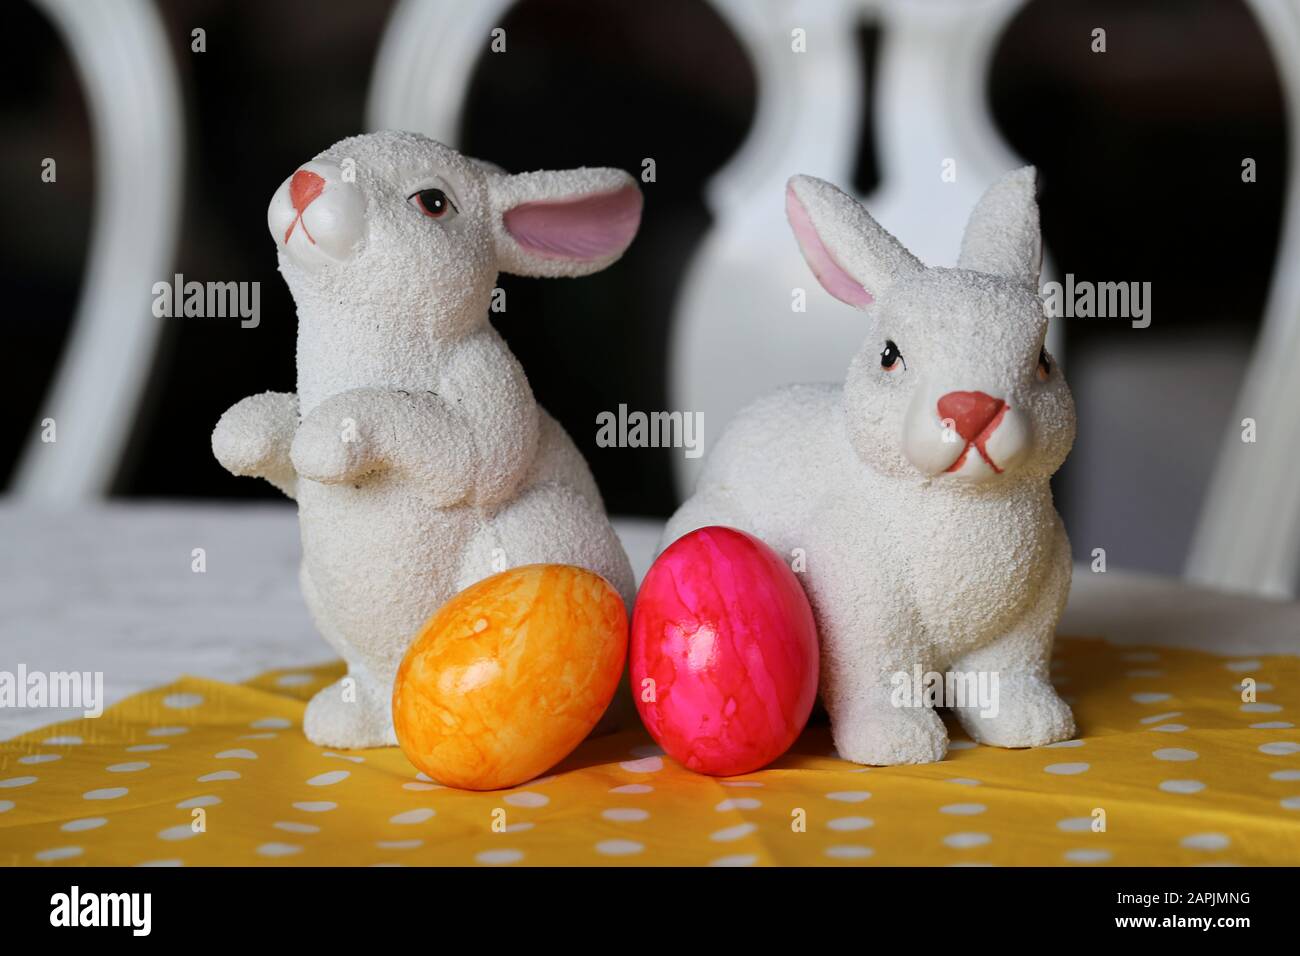 Decorazioni pasquali colorate e gioiose su un tavolo. Immagine a colori closeup di due coniglietti di Pasqua in ceramica e colorate uova di Pasqua dipinte. Foto Stock